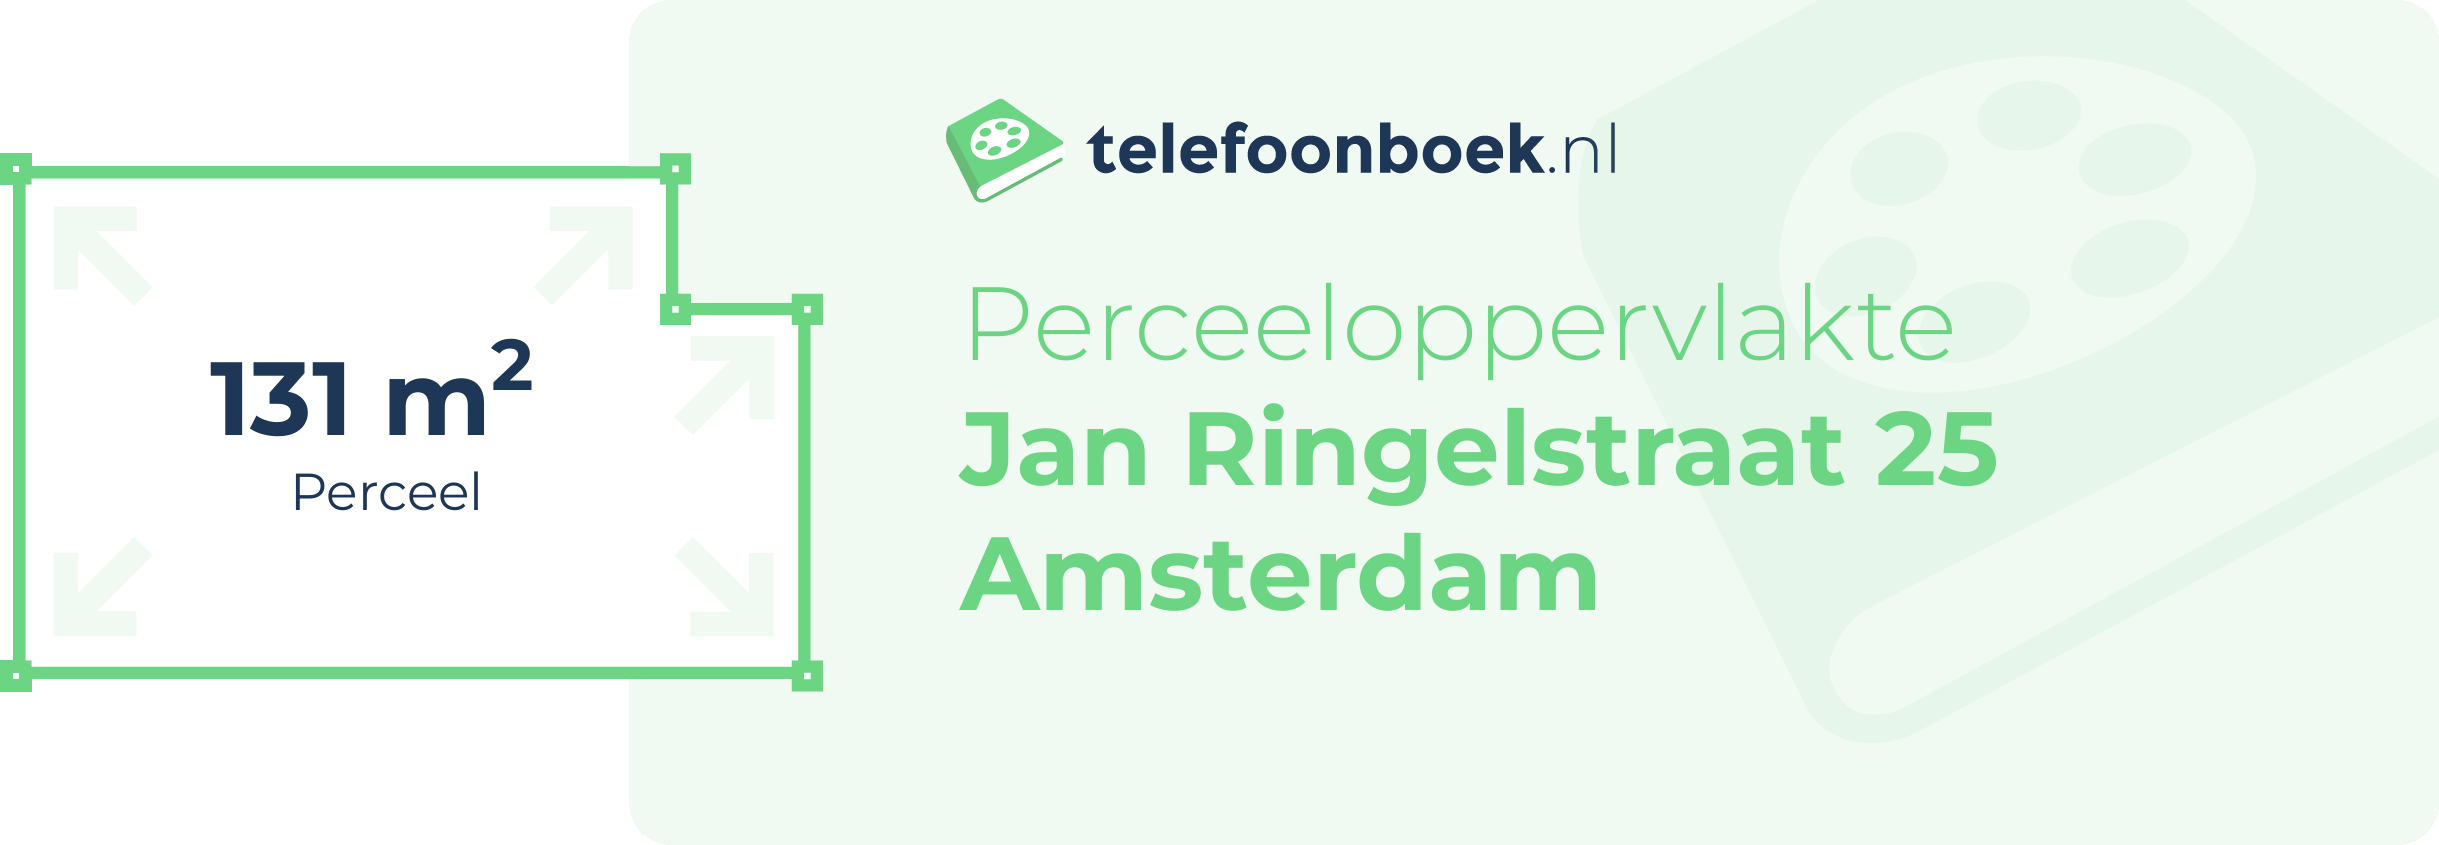 Perceeloppervlakte Jan Ringelstraat 25 Amsterdam